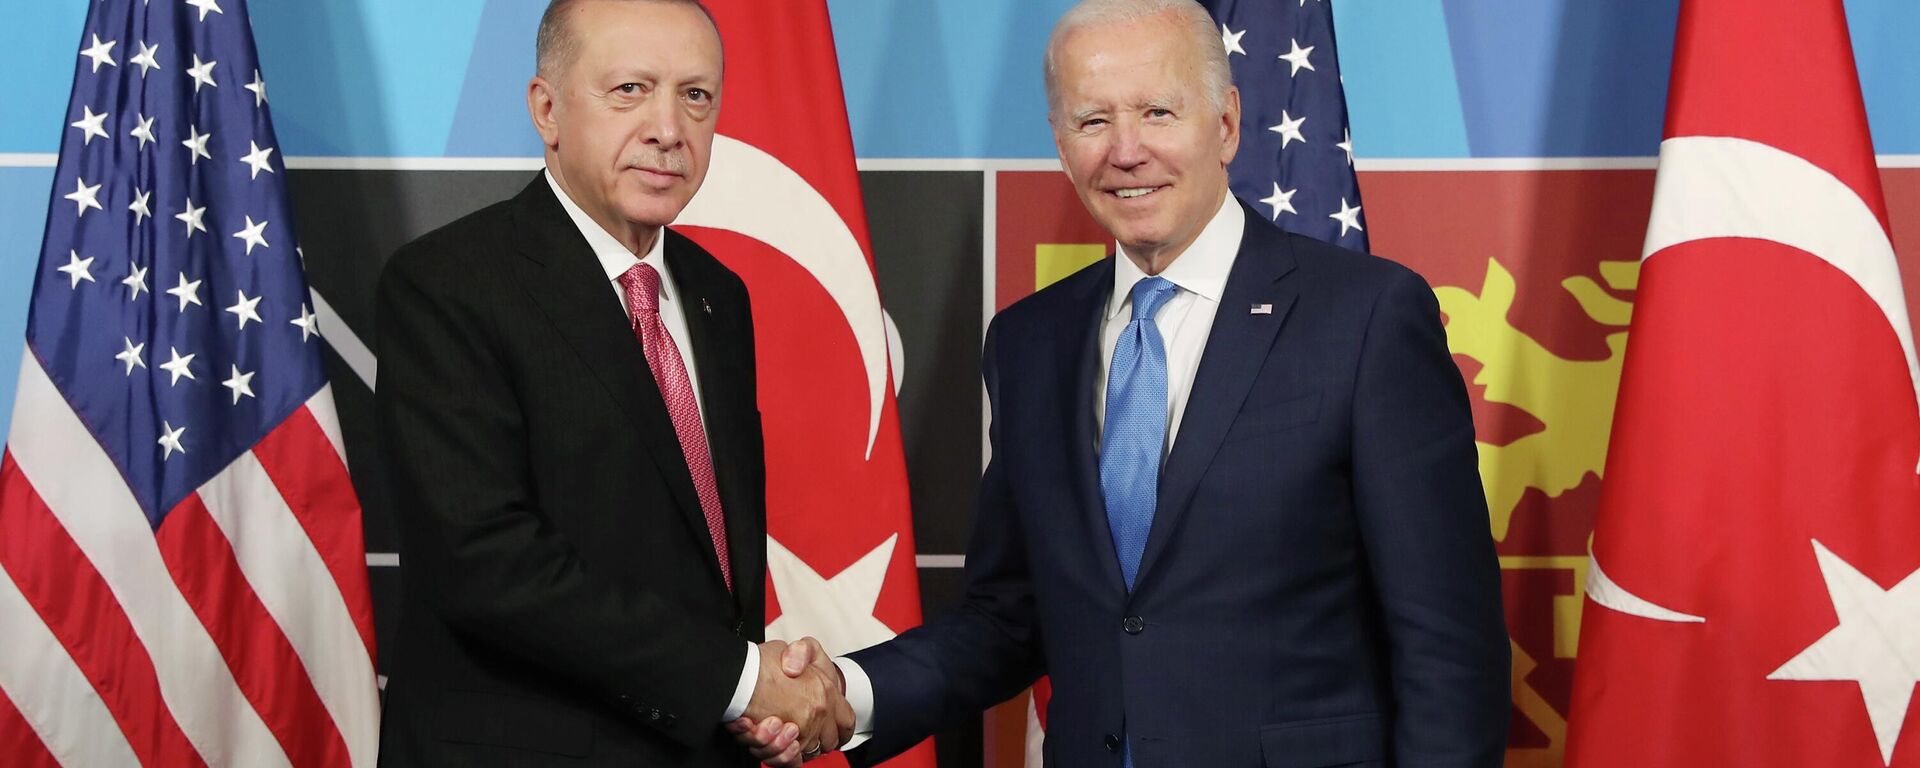 Cumhurbaşkanı Recep Tayyip Erdoğan, ABD Başkanı Joe Biden ile yapacağı görüşme öncesi yaptığı açıklamada, Ukrayna-Rusya Savaşı'nda Türkiye'nin denge politikası yürüttüğünü ifade etti. ABD Başkanı Joe Biden ise, Türkiye'nin Finlandiya ve İsveç'in NATO üyeliğine verdiği destek için Cumhurbaşkanı Erdoğan'a teşekkür etti. - Sputnik Türkiye, 1920, 28.03.2023